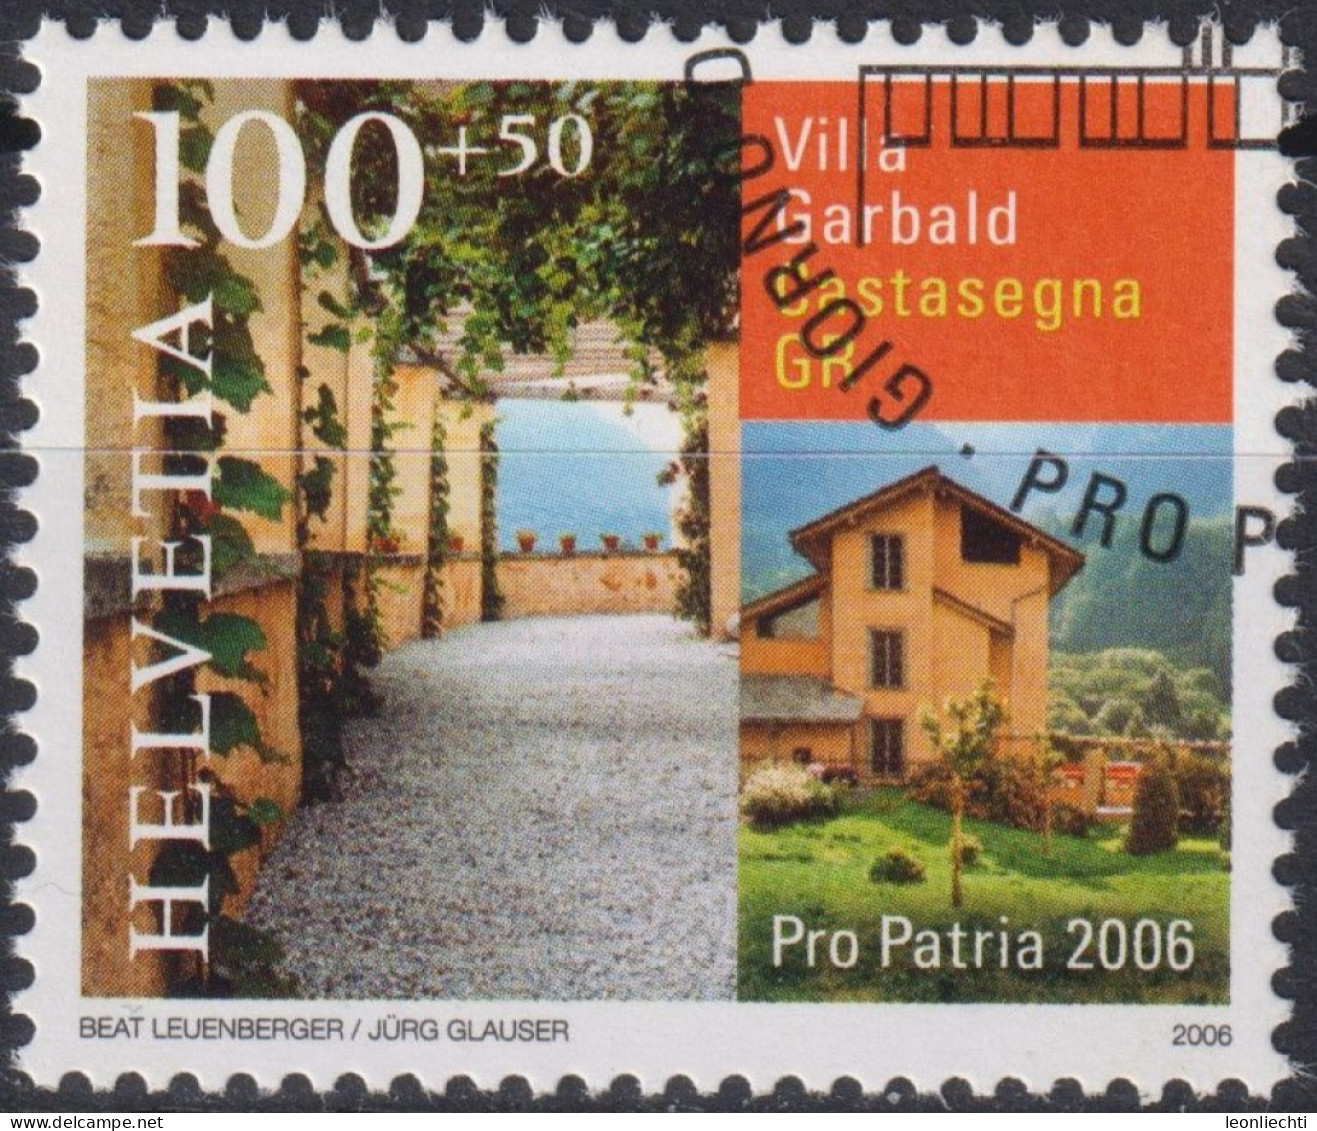 2006 Schweiz Pro Patria, Villa Garbald, Castasegna GR ⵙ Zum:CH B294, Mi:CH 1963, Yt:CH 1890 - Usati